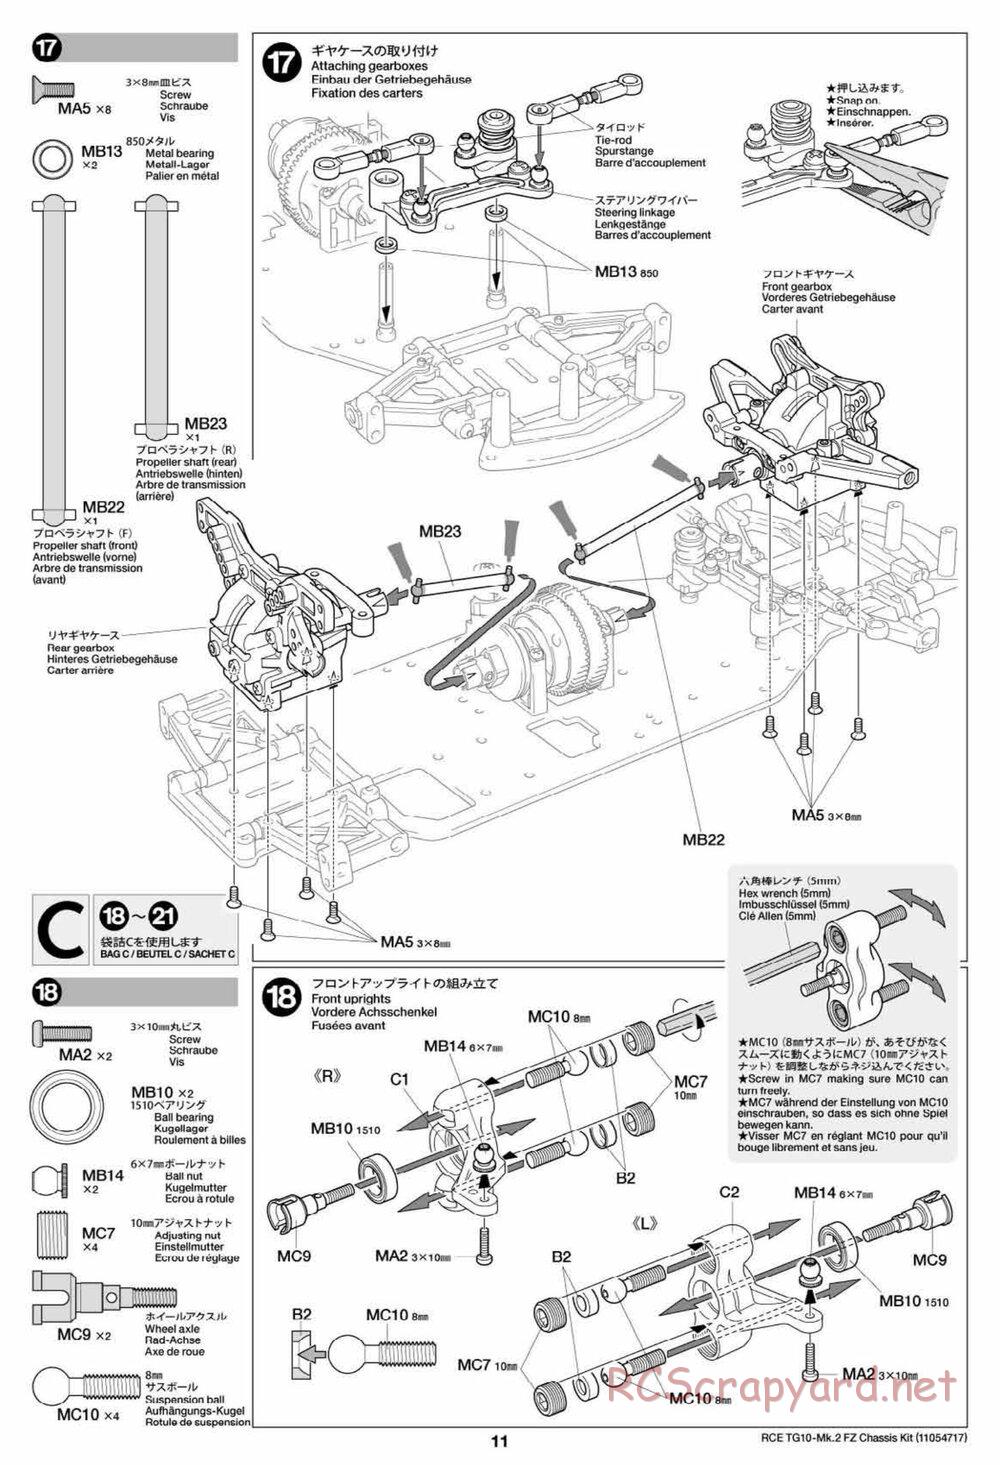 Tamiya - TG10 Mk.2 FZ Chassis - Manual - Page 11